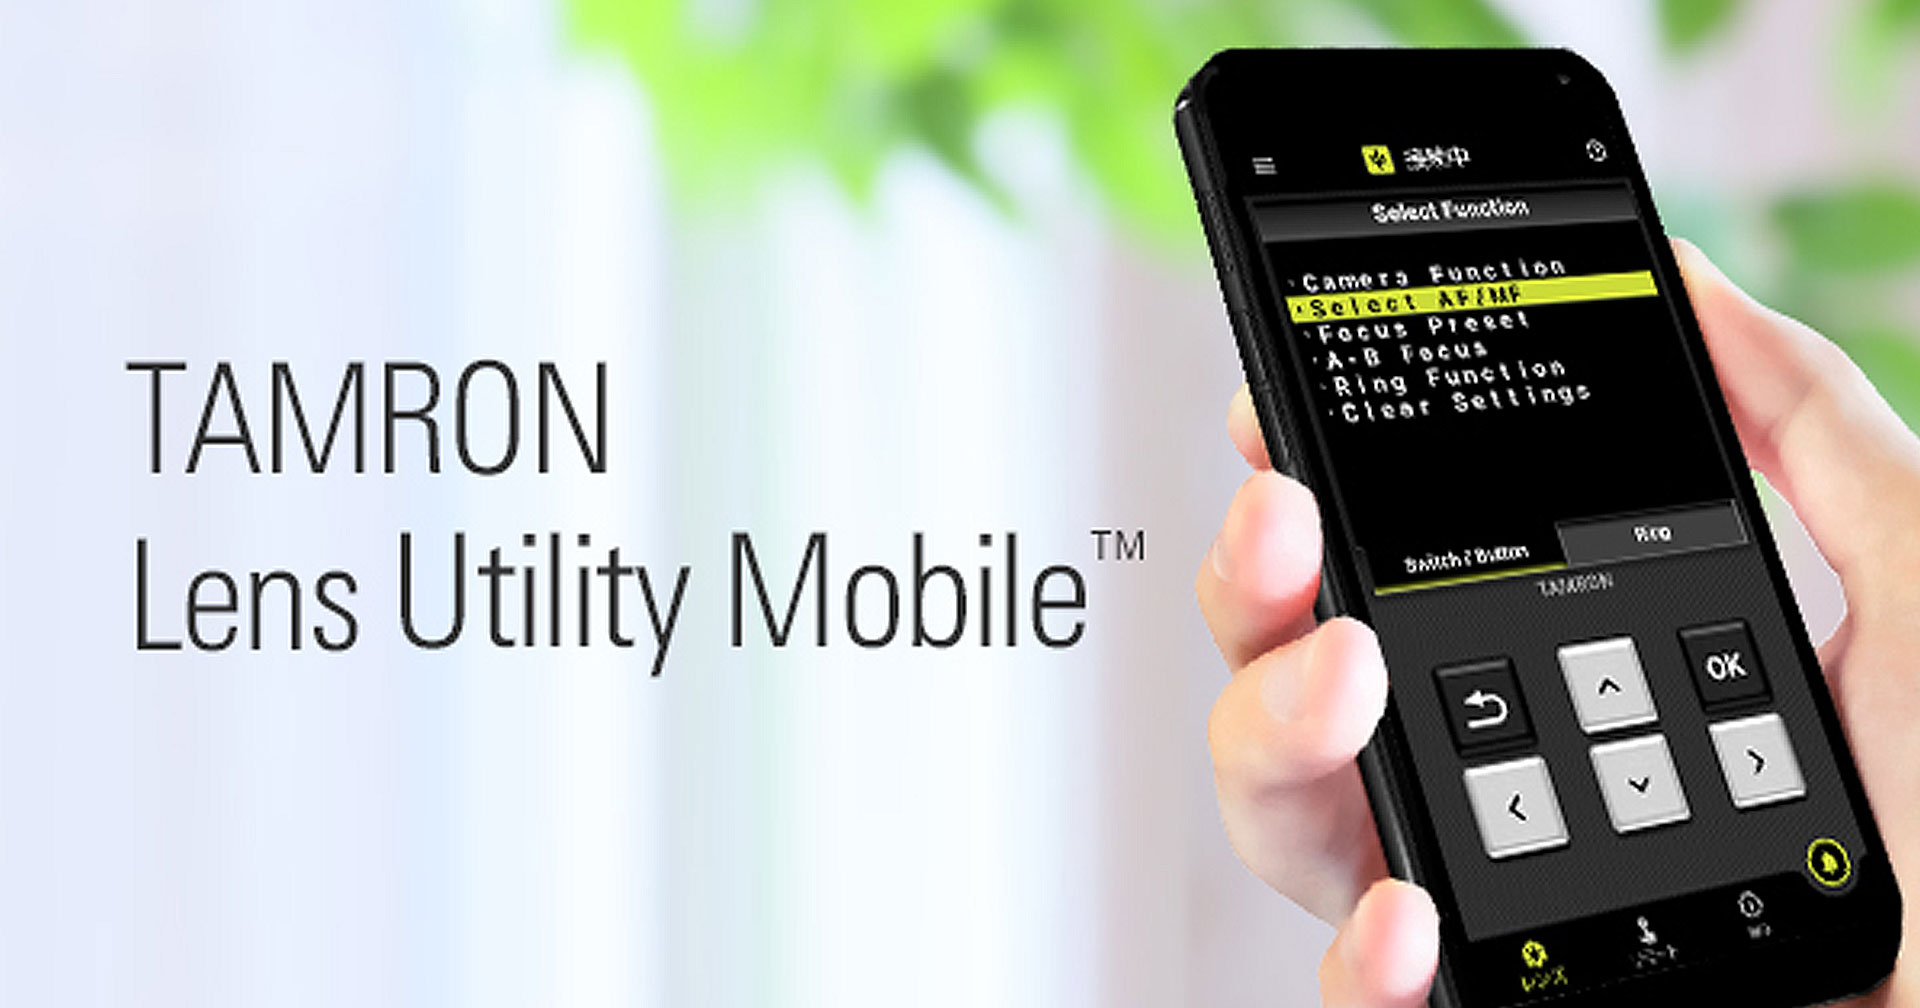 TAMRON Lens Utility Mobile แอปปรับตั้งค่าเลนส์จากสมาร์ตโฟน Android เปิดให้ดาวน์โหลดแล้วผ่าน Play Store